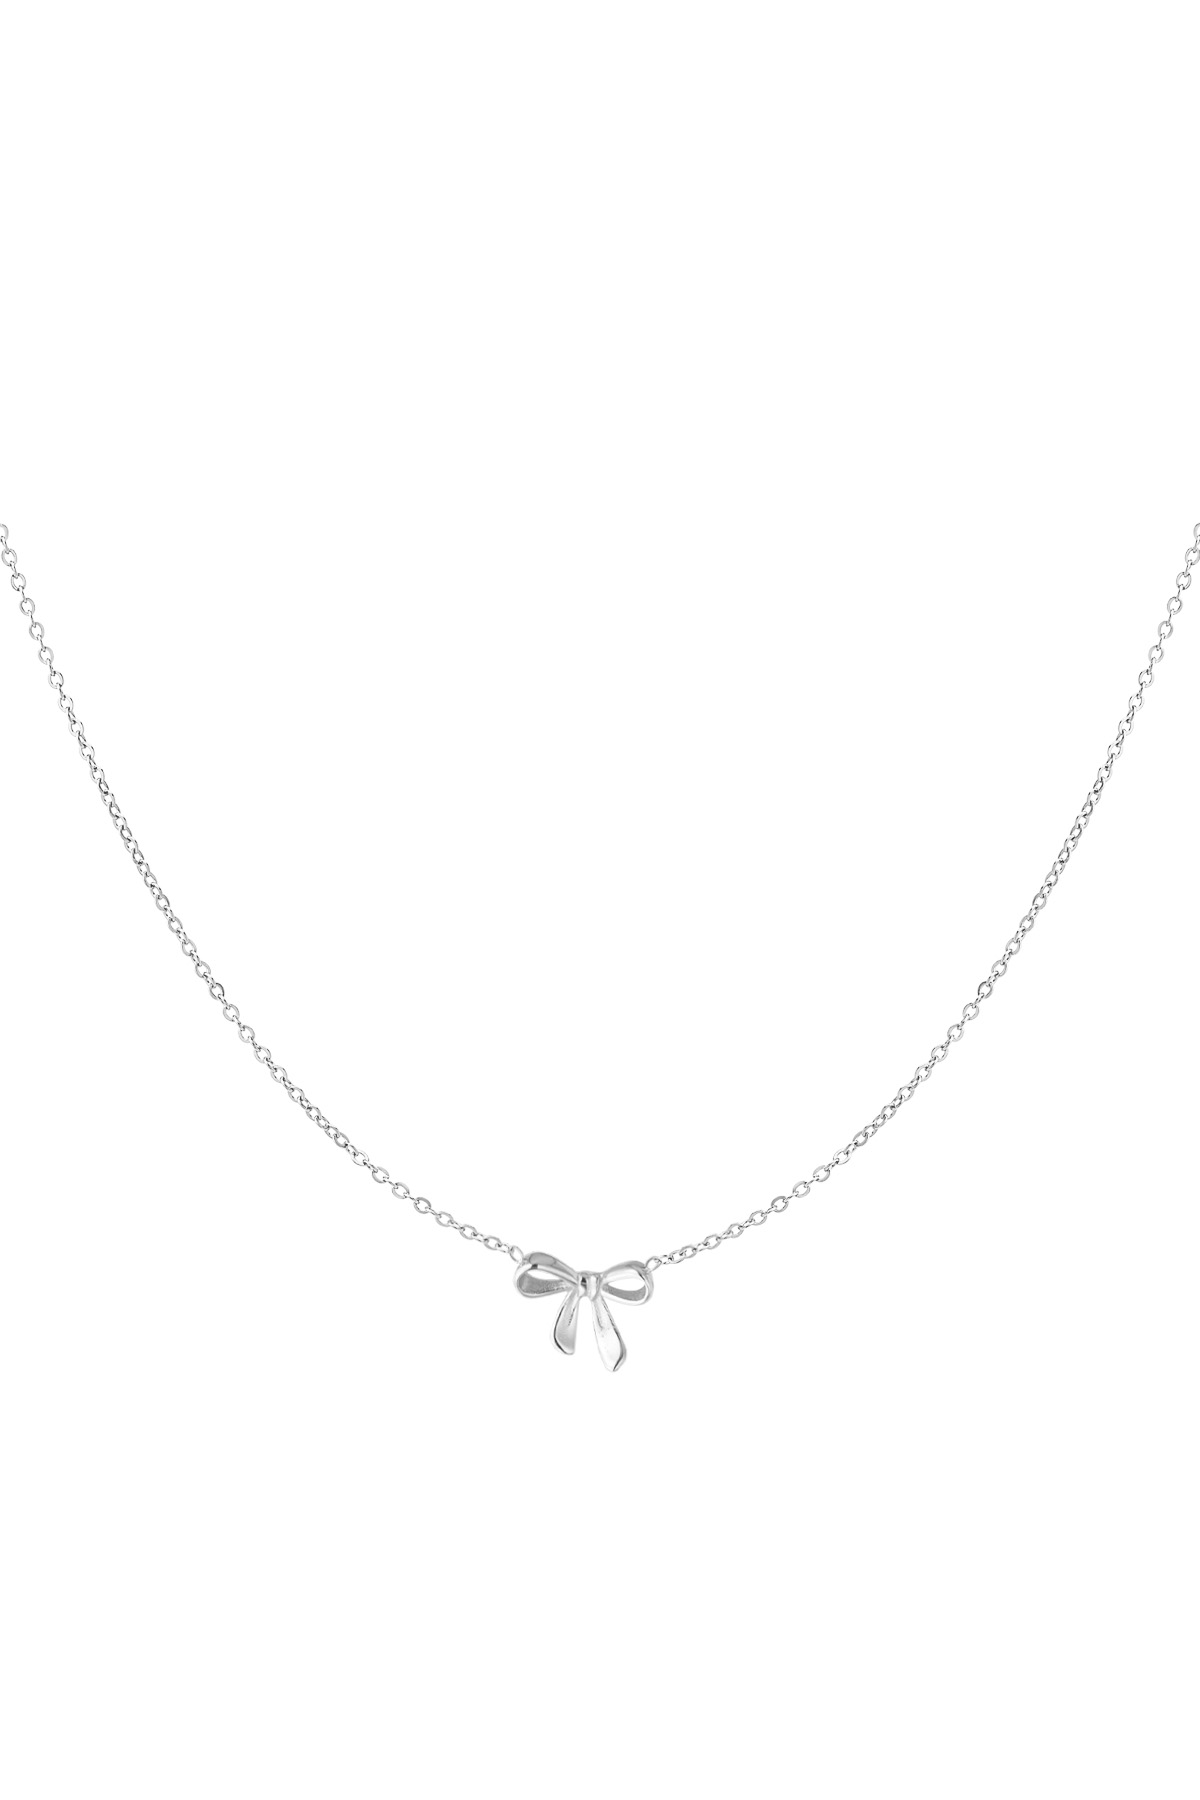 Halskette Fliegentraum - silber h5 